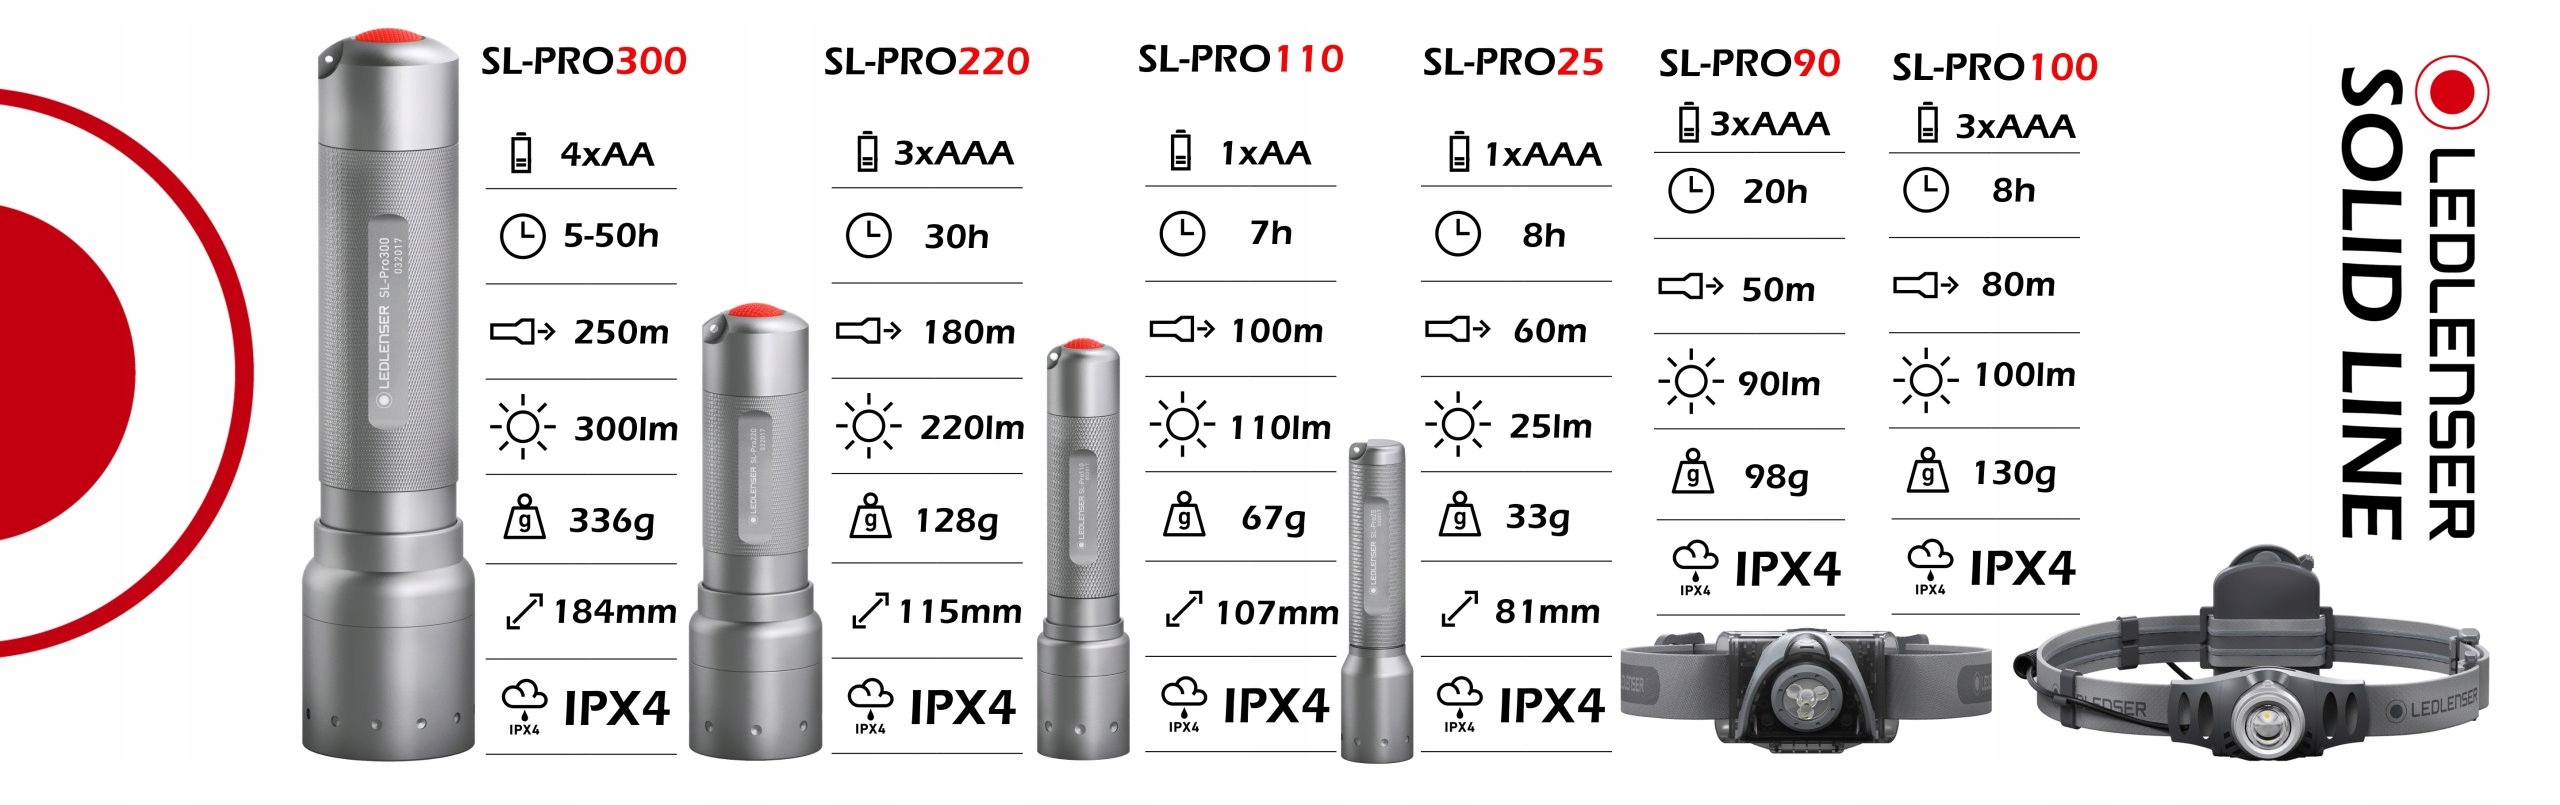 Linterna Led Lenser SL-Pro300 300LM Blister